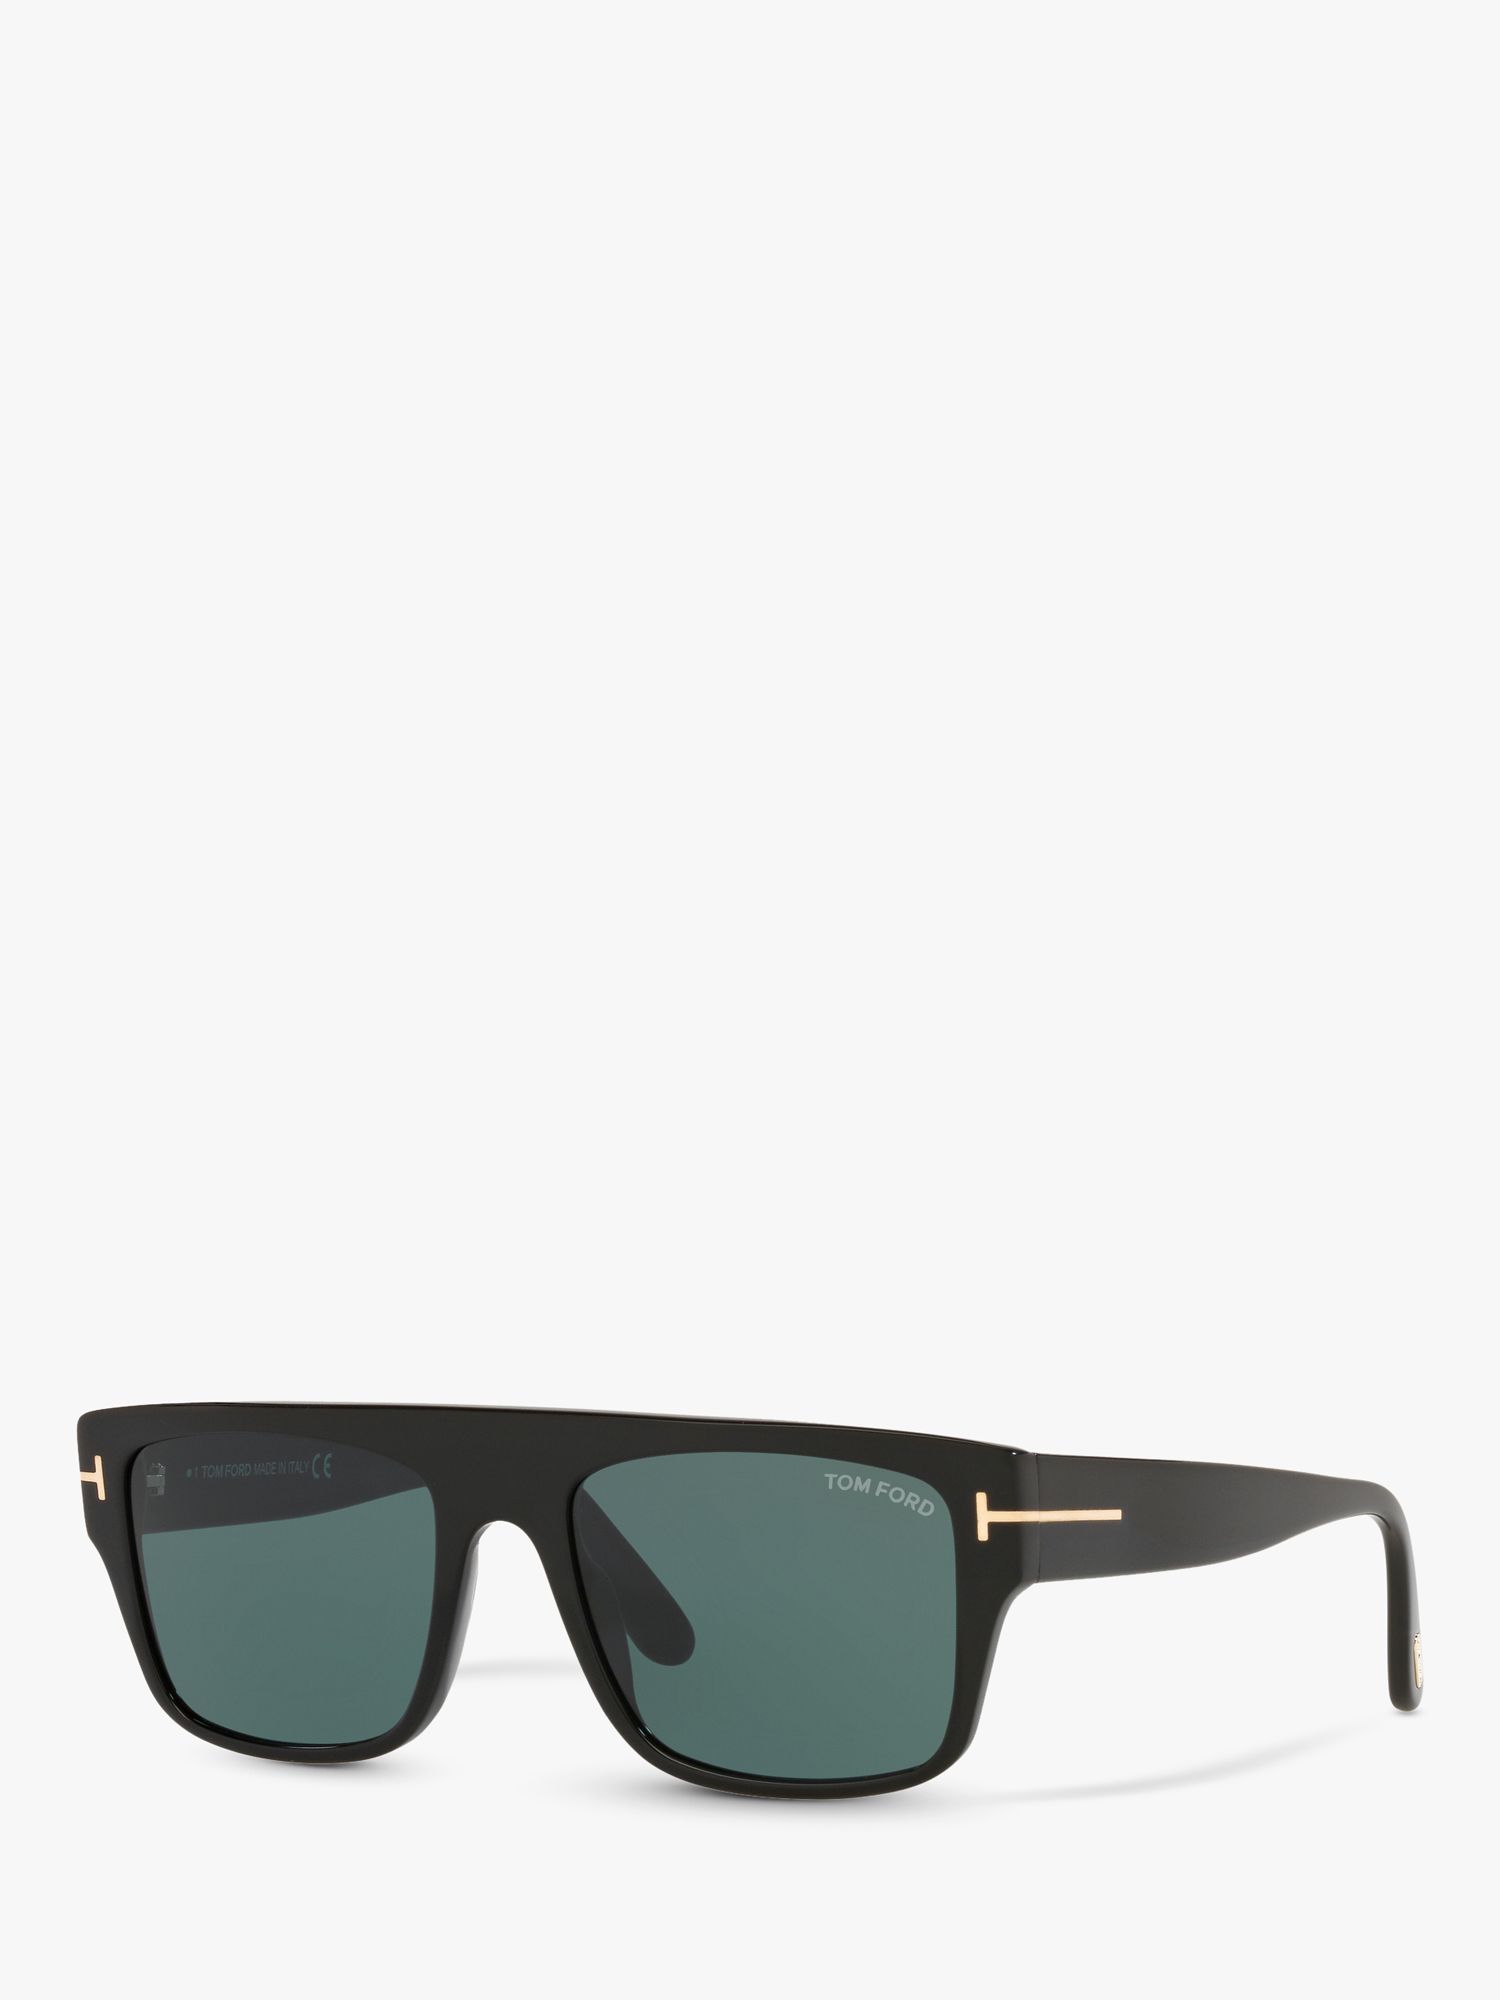 TOM FORD TR001363 Мужские солнцезащитные очки прямоугольной формы, блестящие черные/синие